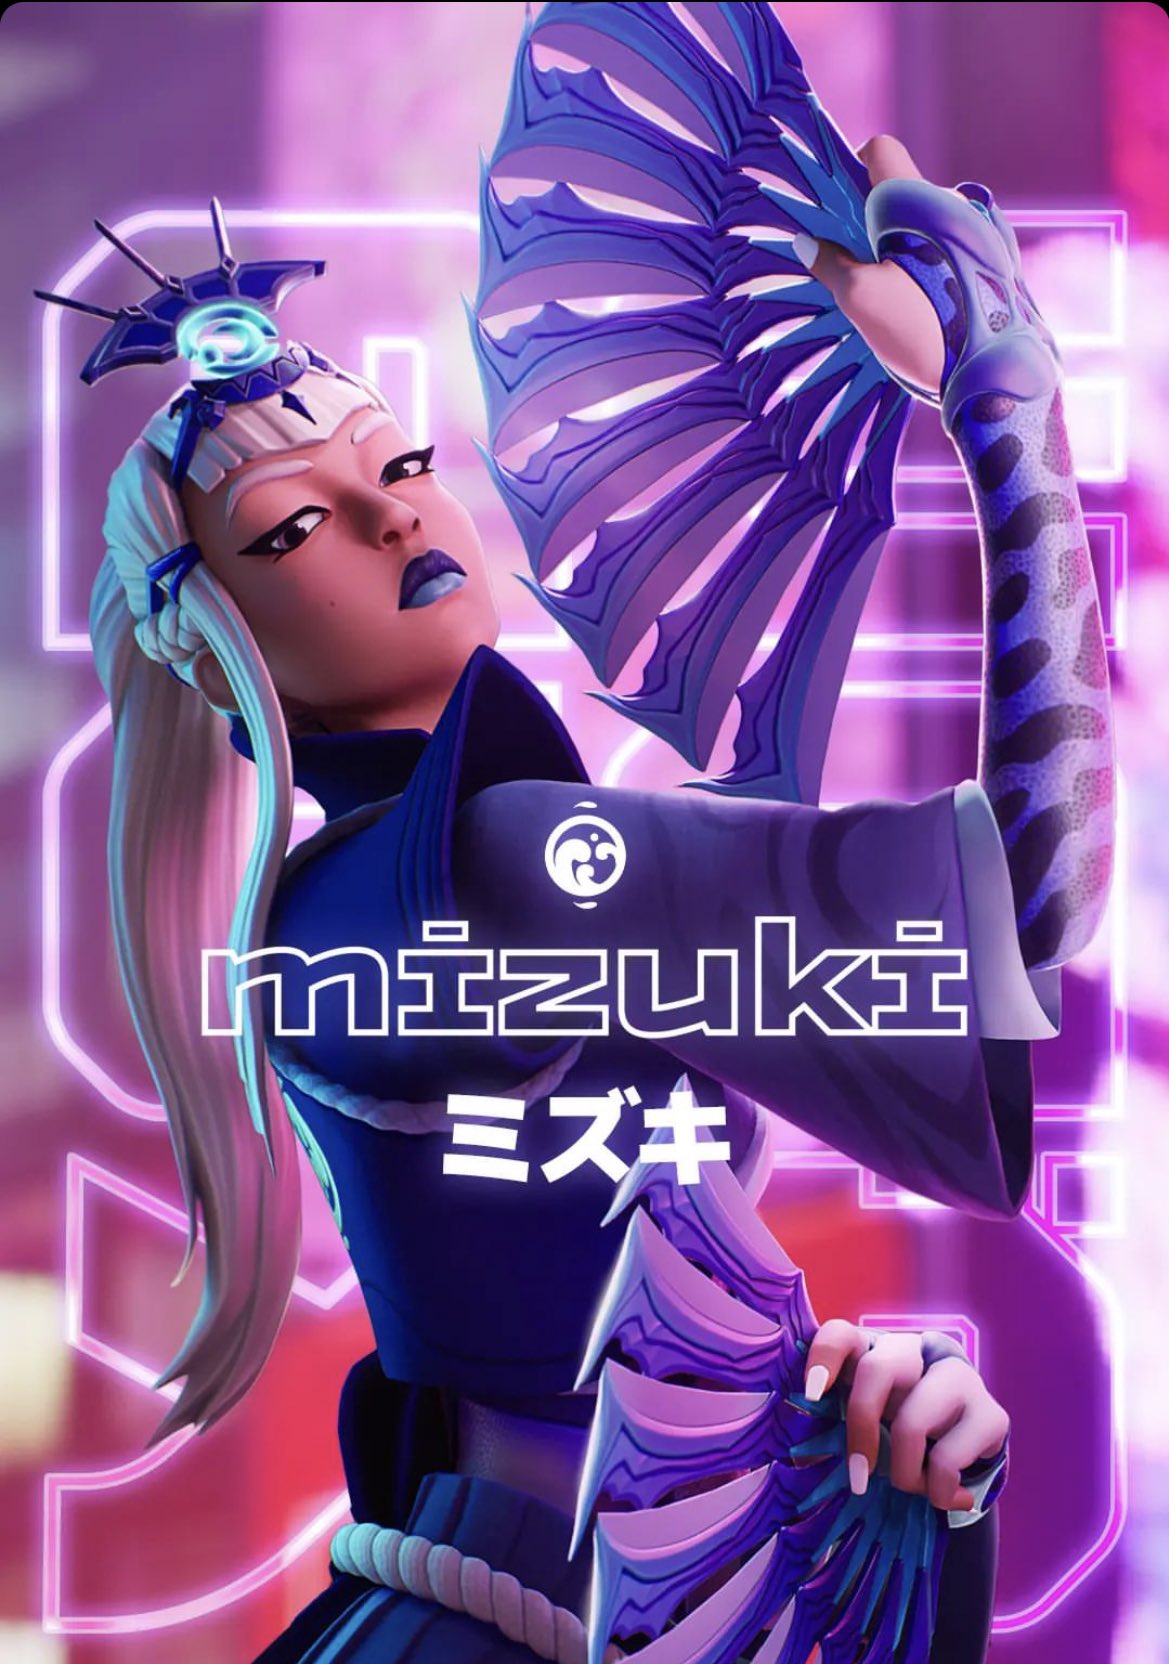 Mizuki Fortnite wallpaper